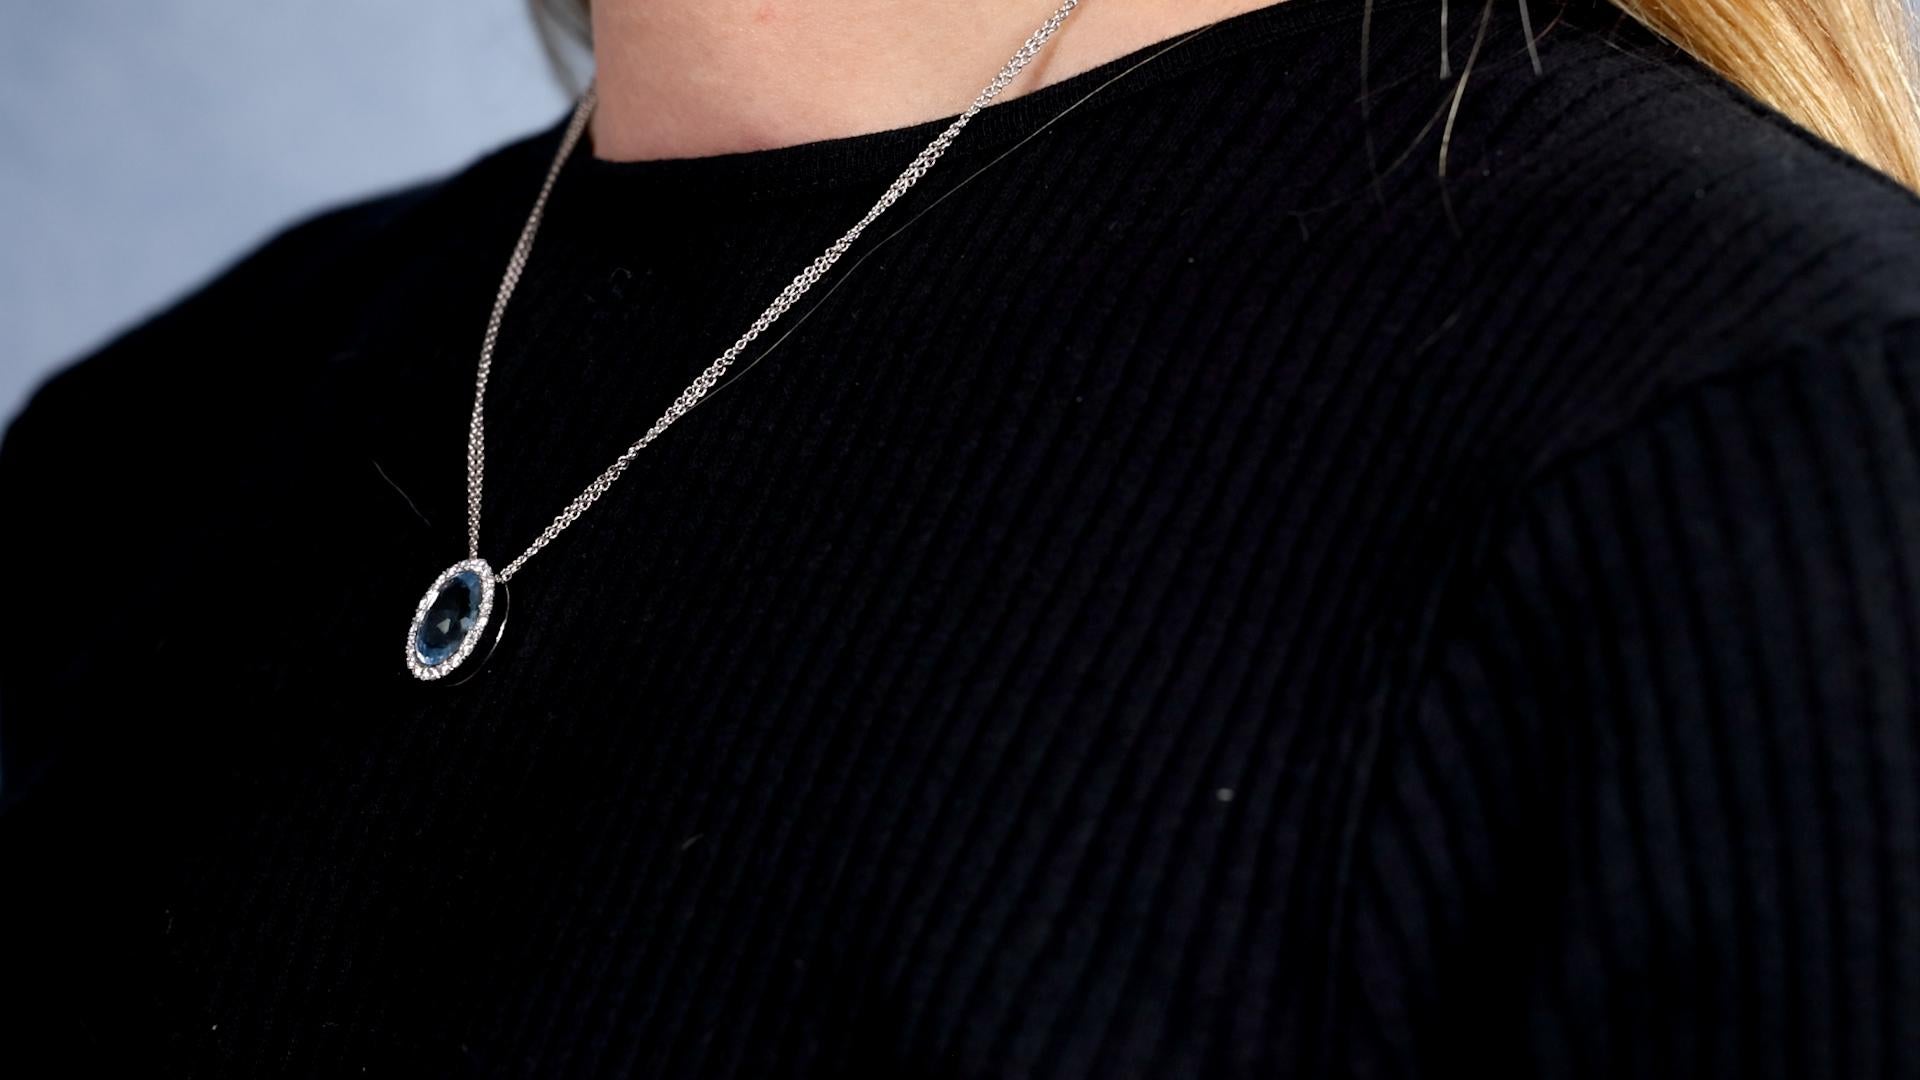 Brilliant Cut Hans D. Krieger Aquamarine Diamond 18k White Gold Pendant Necklace